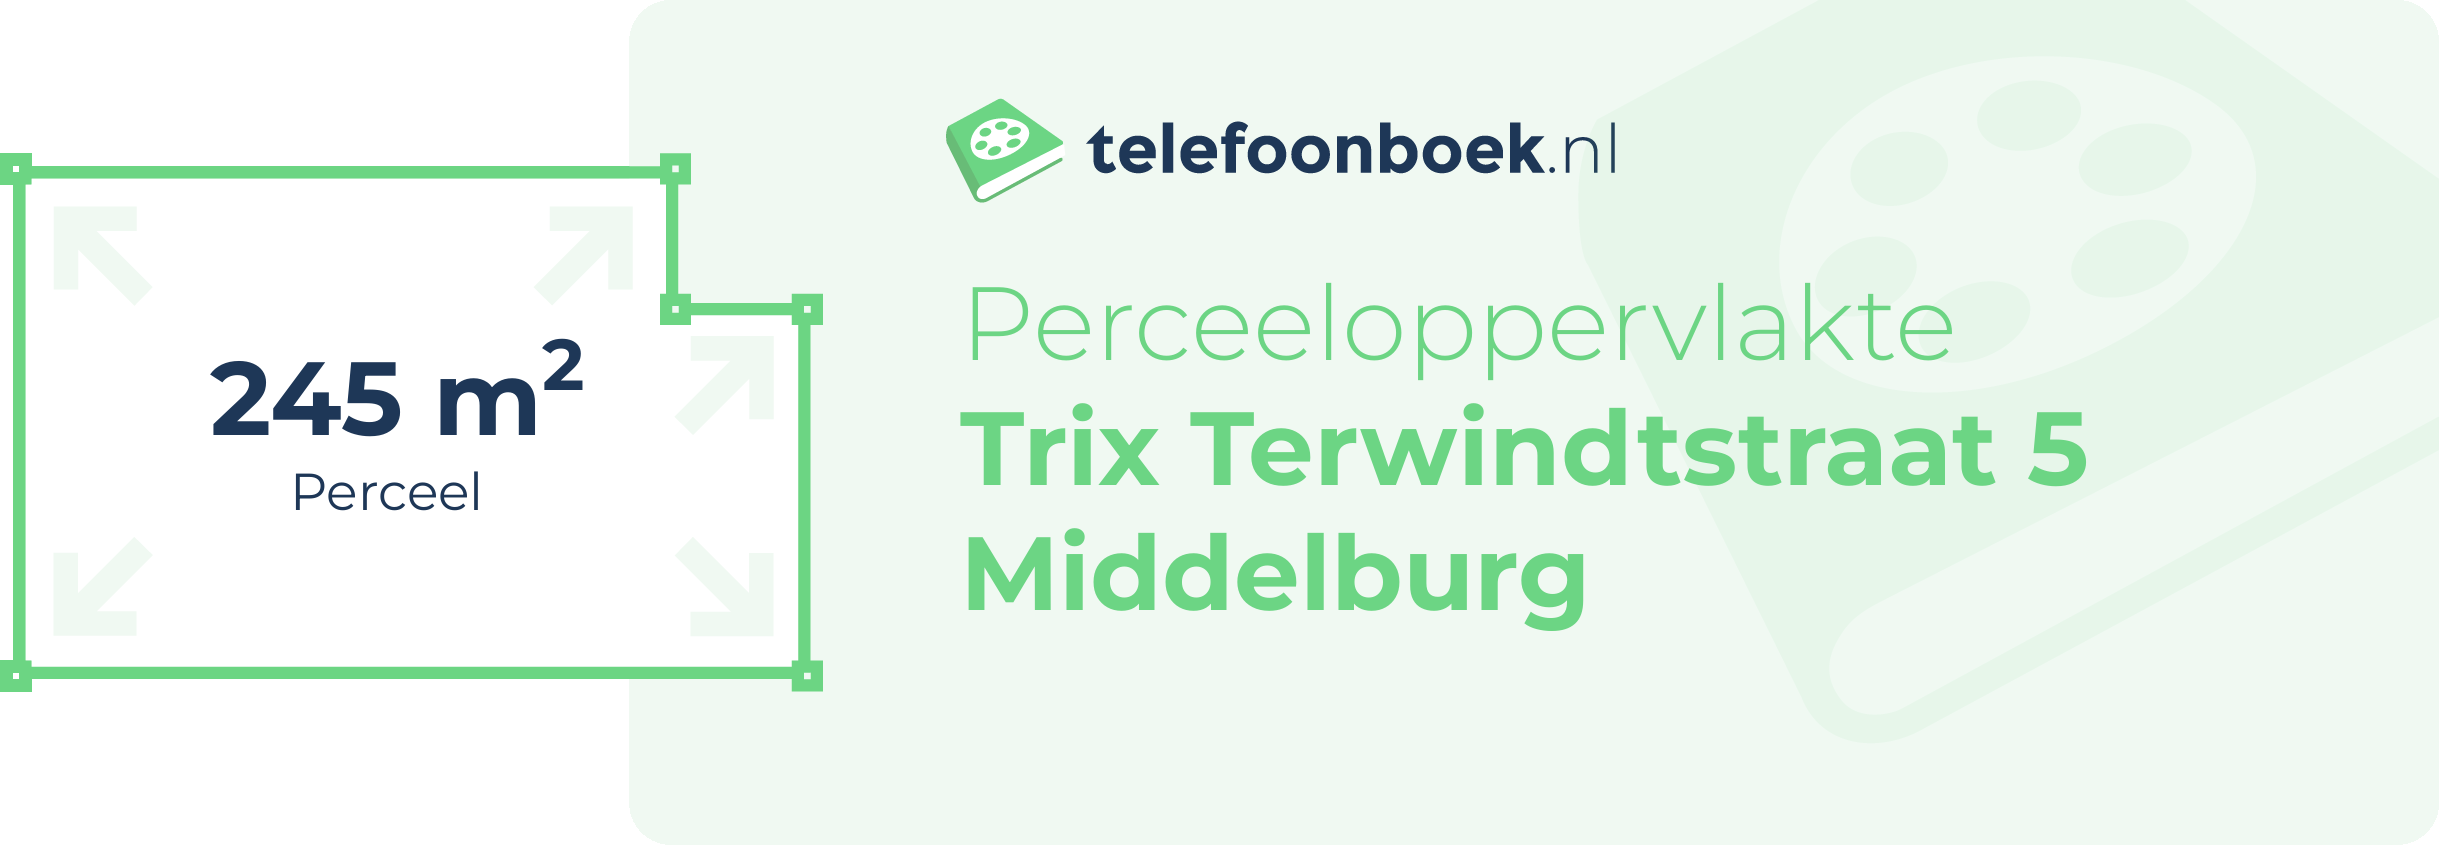 Perceeloppervlakte Trix Terwindtstraat 5 Middelburg